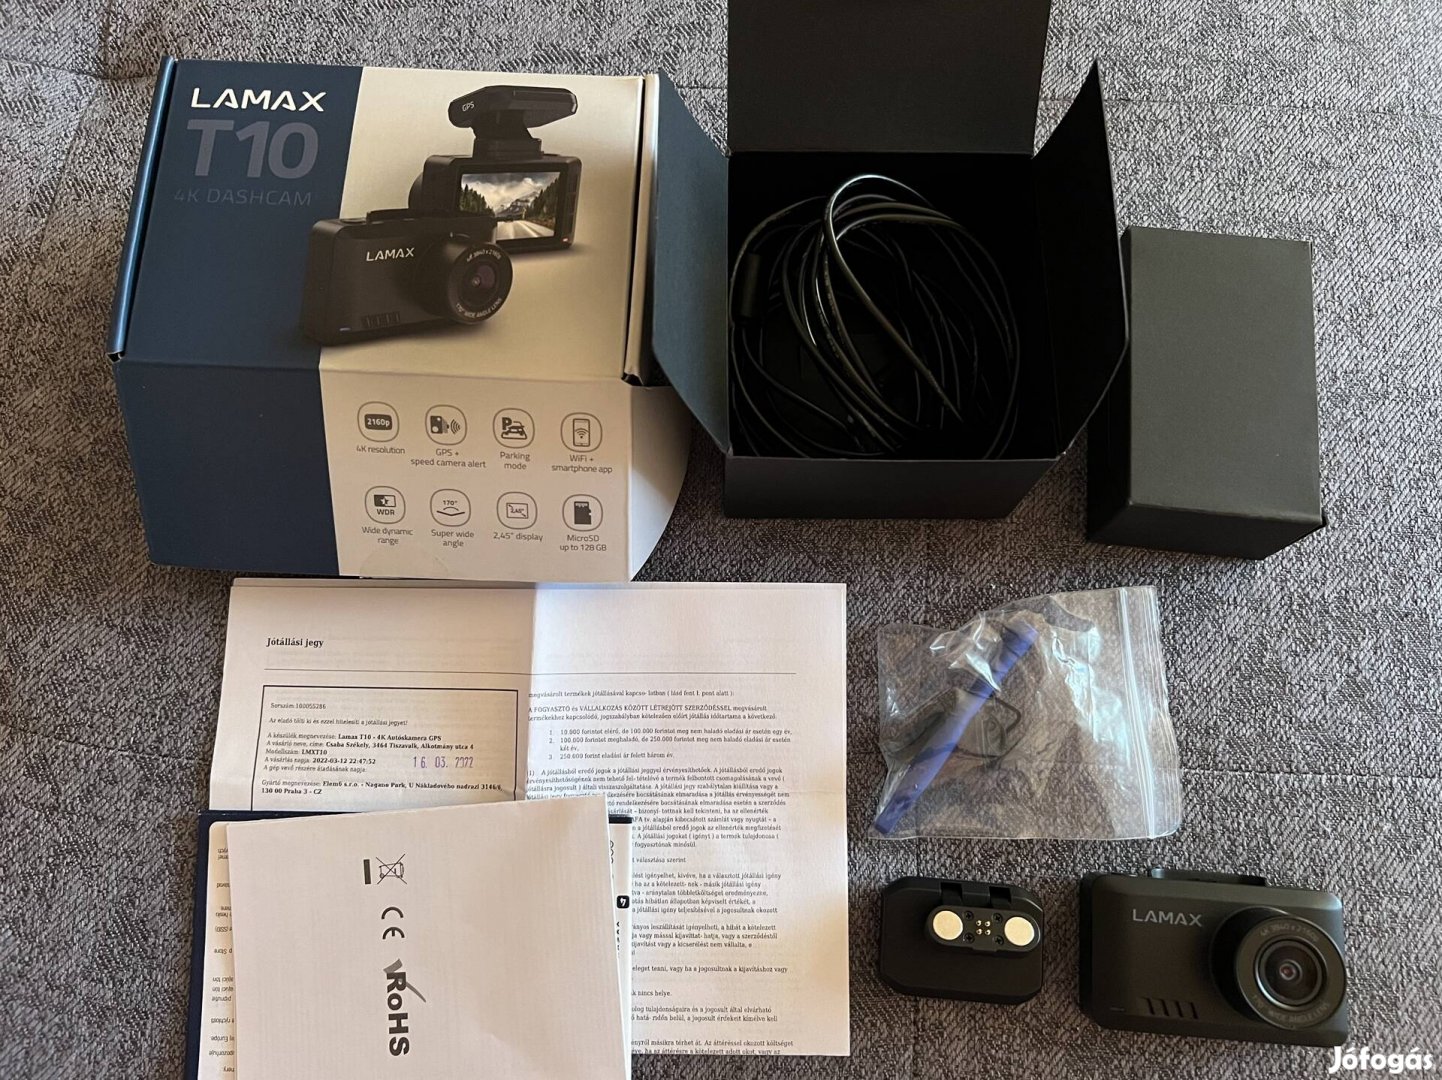 Lamax T10 _ 4K Dashcam